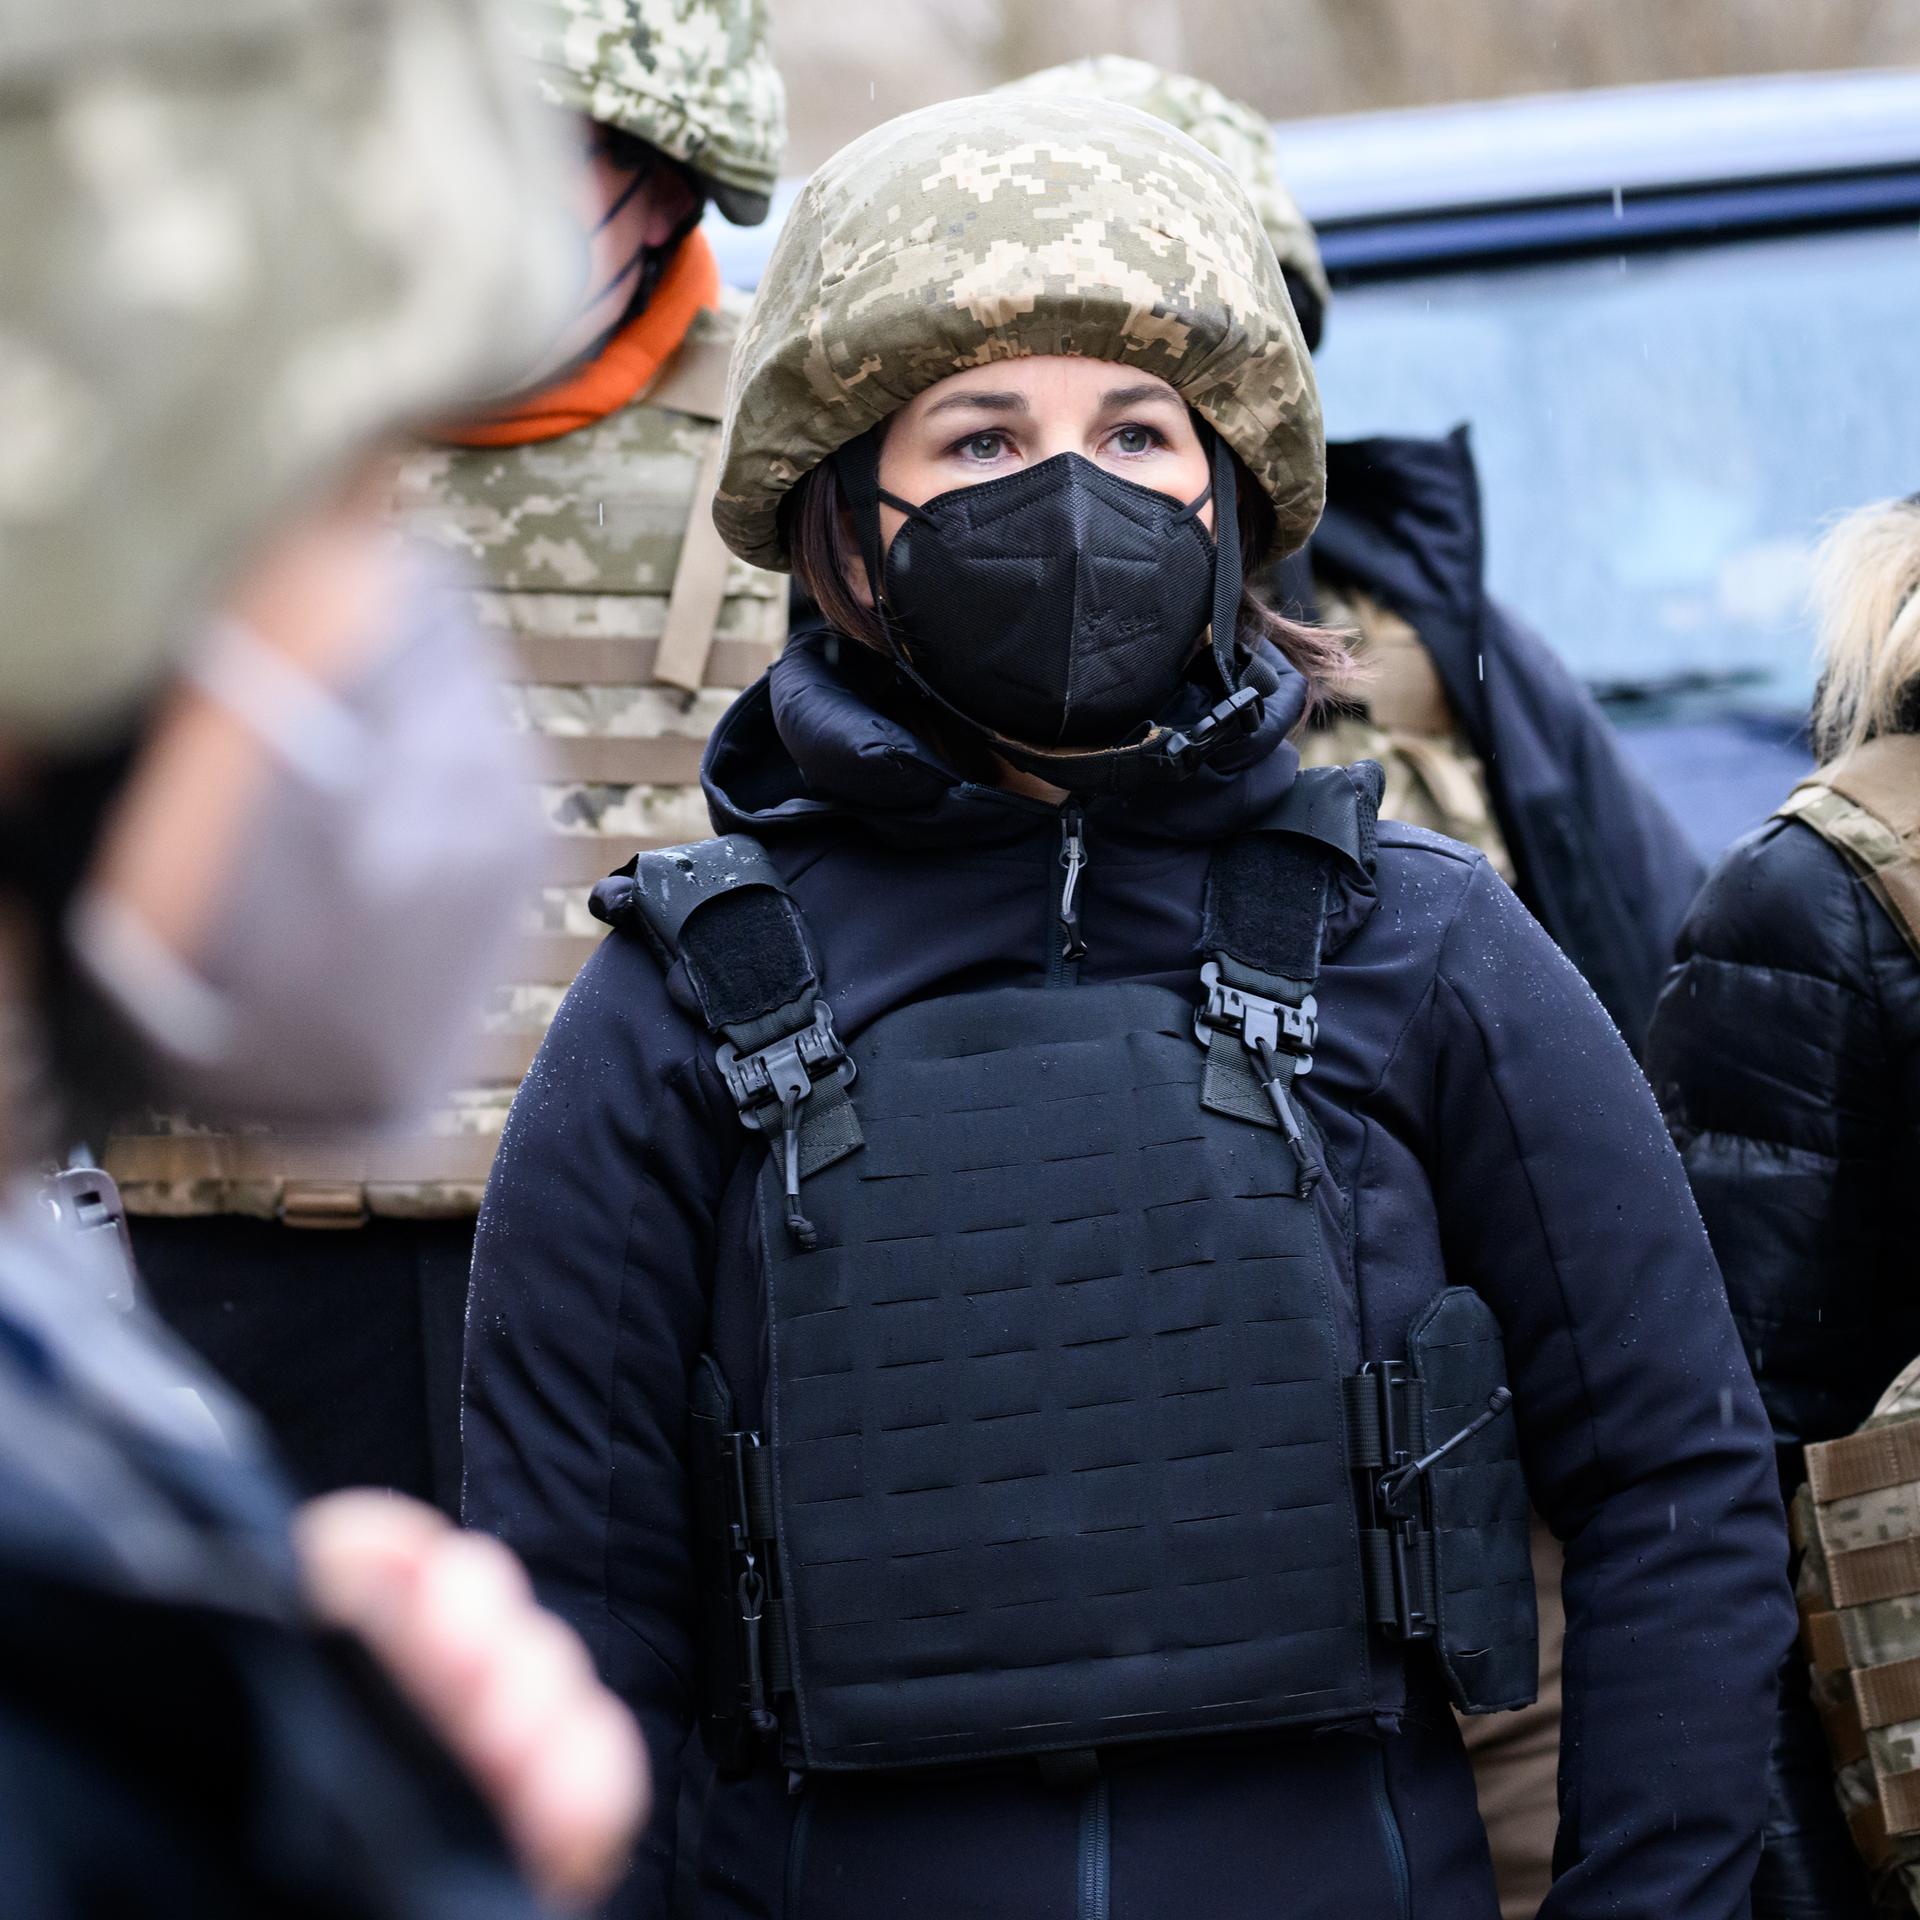 Außenministerin Annalena Baerbock im Konfliktgebiet Donbass in der Ukraine. Sie trägt eine schwarze FFP2-Maske, einen Tarnhelm und eine schwarze Schutzweste. Sie ist umringt von Menschen, die ebenfalls Tarn- und Schutzkleidung tragen.